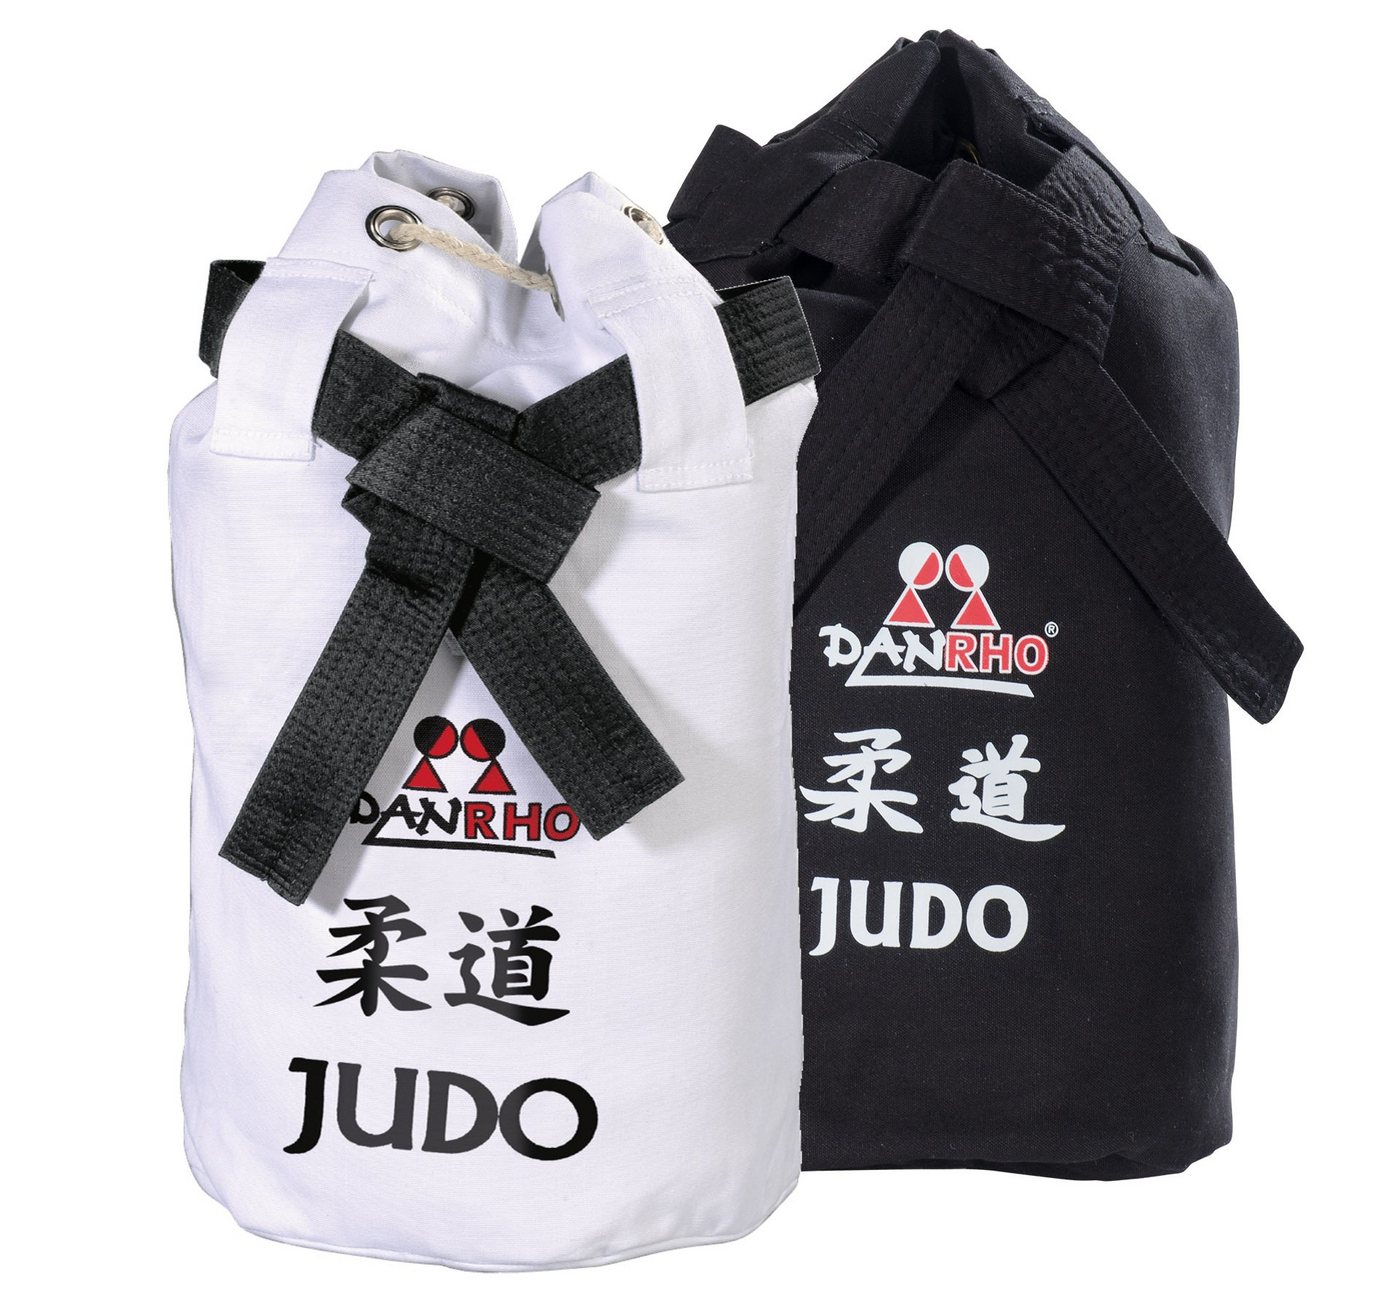 Danrho Sporttasche Judo Seesack Beutel Kinder Rucksack Turnbeutel (Baumwolle, Kordelzug Schnellverschluß), schwarz oder weiss, Budogürtel Optik von Danrho